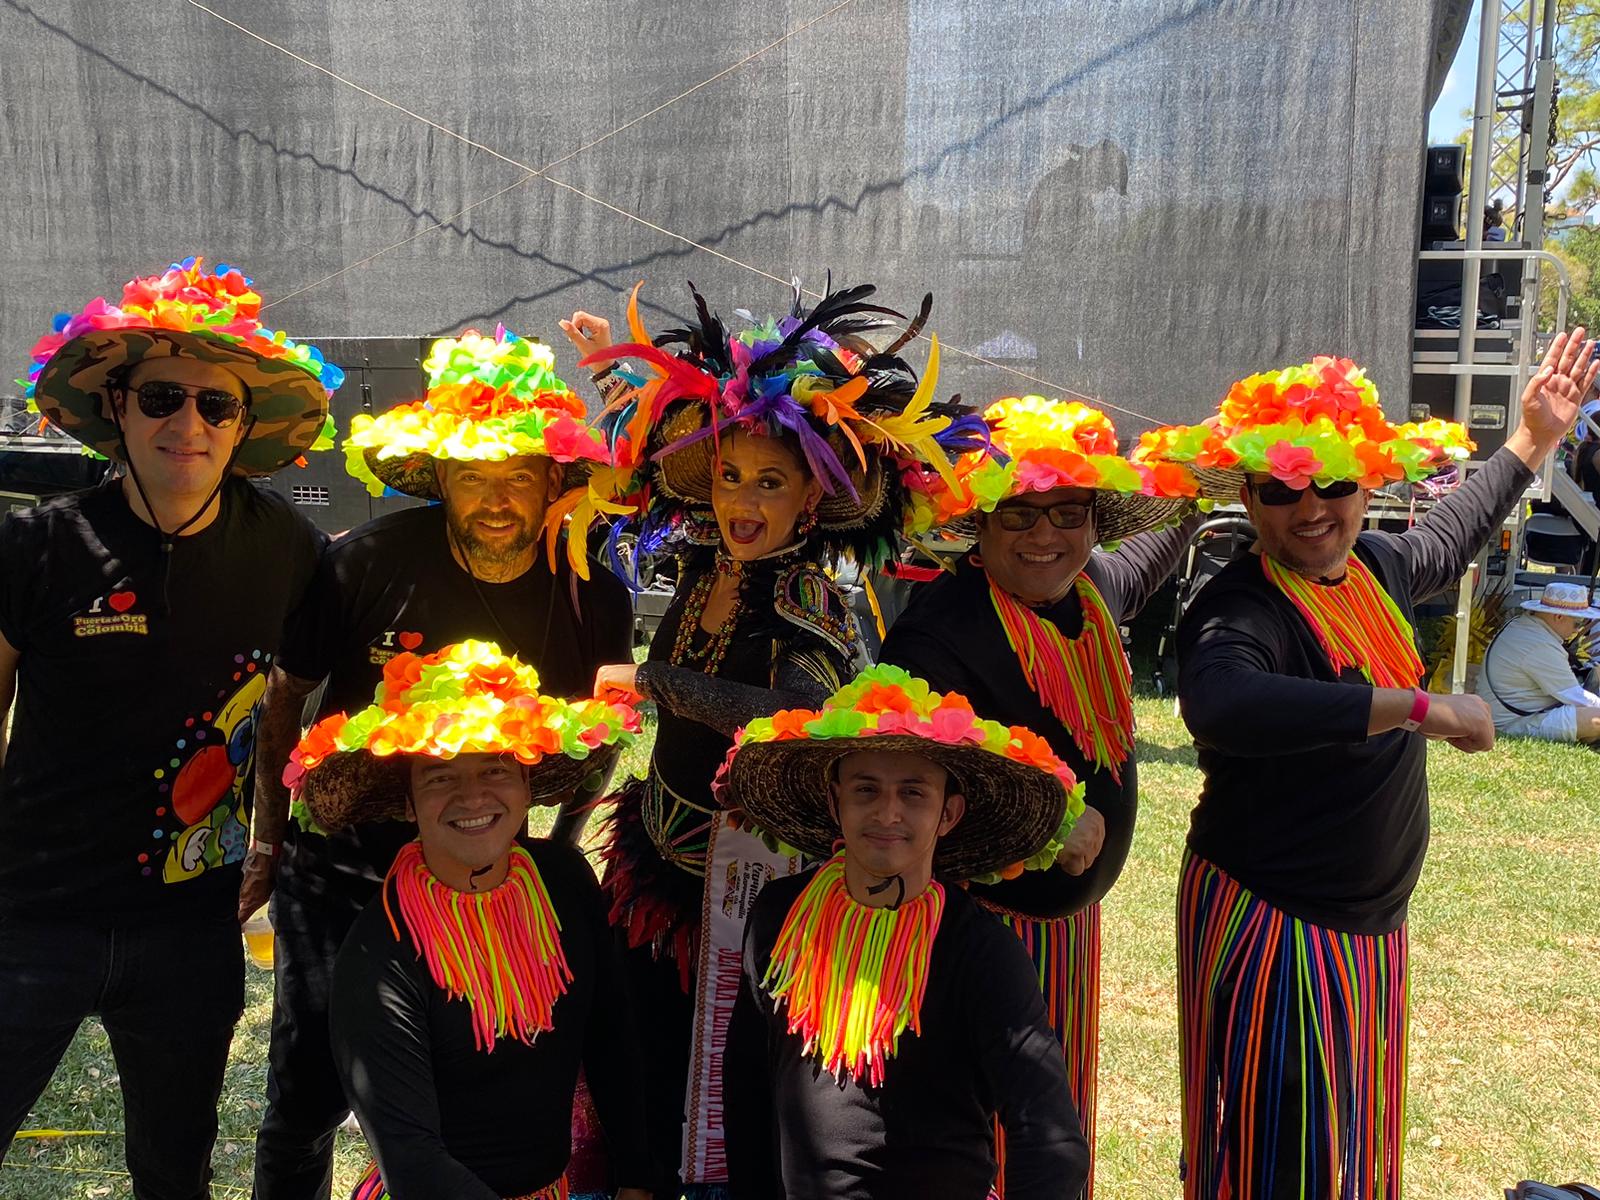 Señora Reina del Carnaval de Barranquilla en Miami disfrazada junto a su equipo.